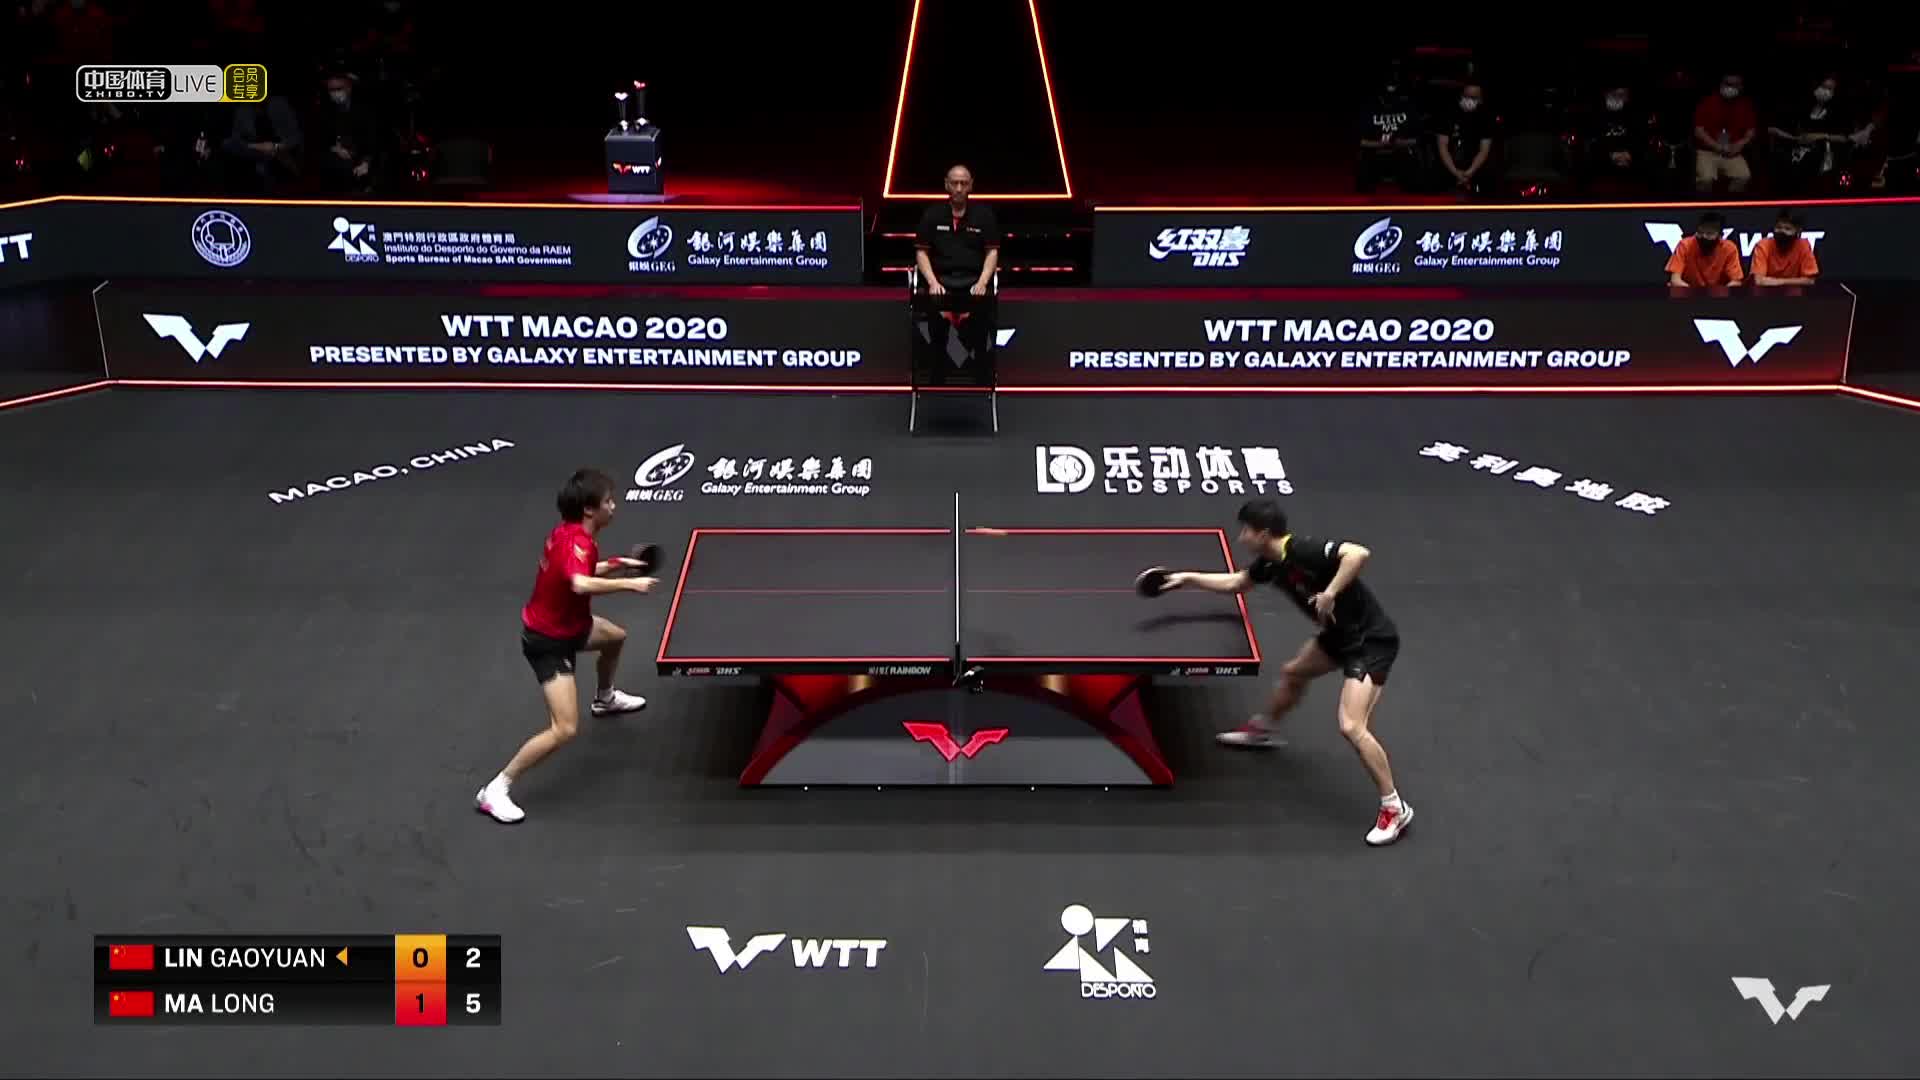 林高远 vs 马龙 WTT澳门国际乒乓球赛 男单半决赛